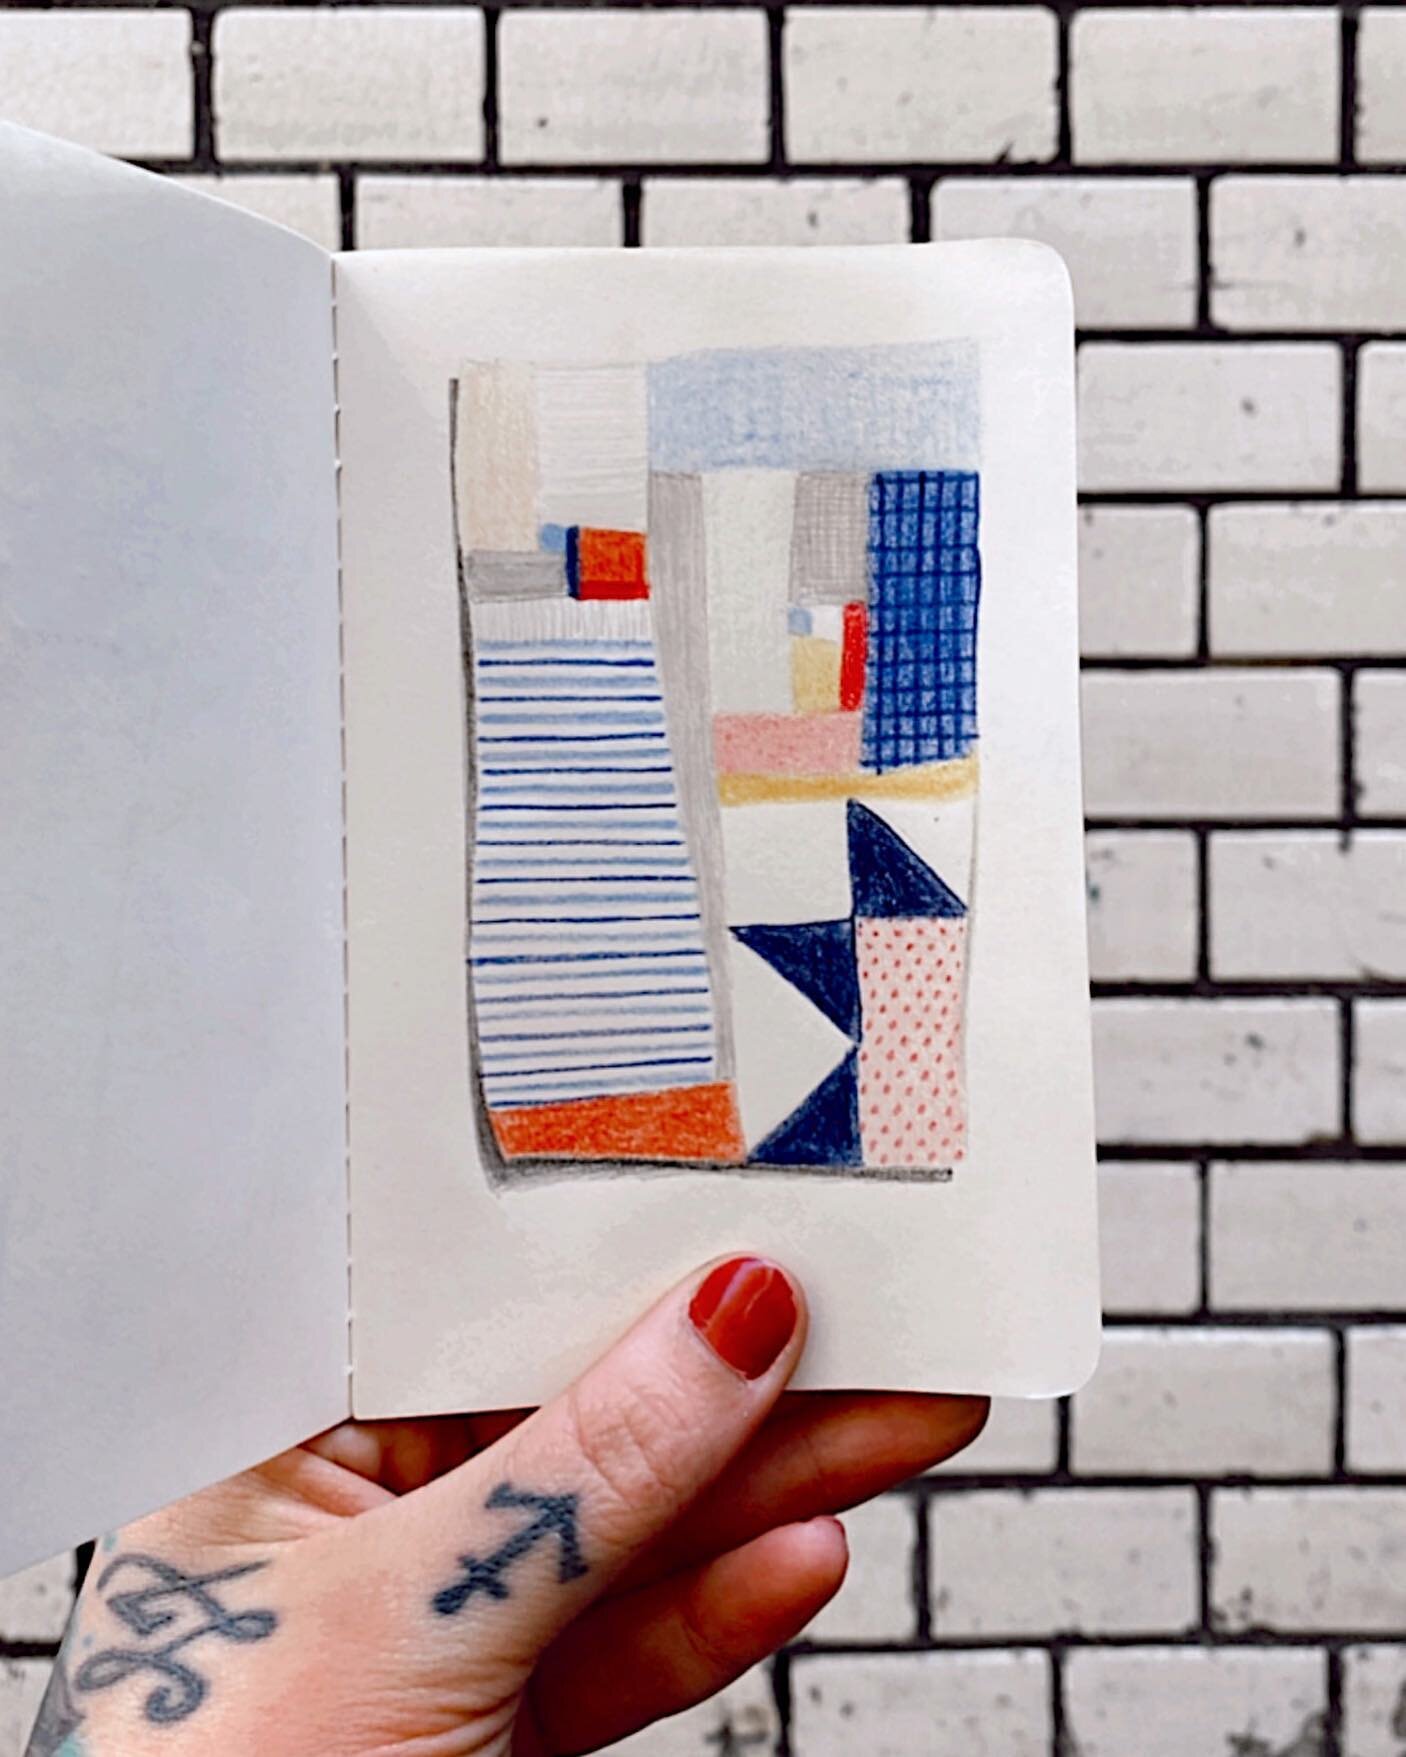 Liten skisse i liten skissebok ☺️🥰
.
.
.
.
.
.
#sketchbook #quiltpattern #patchworkdrawing